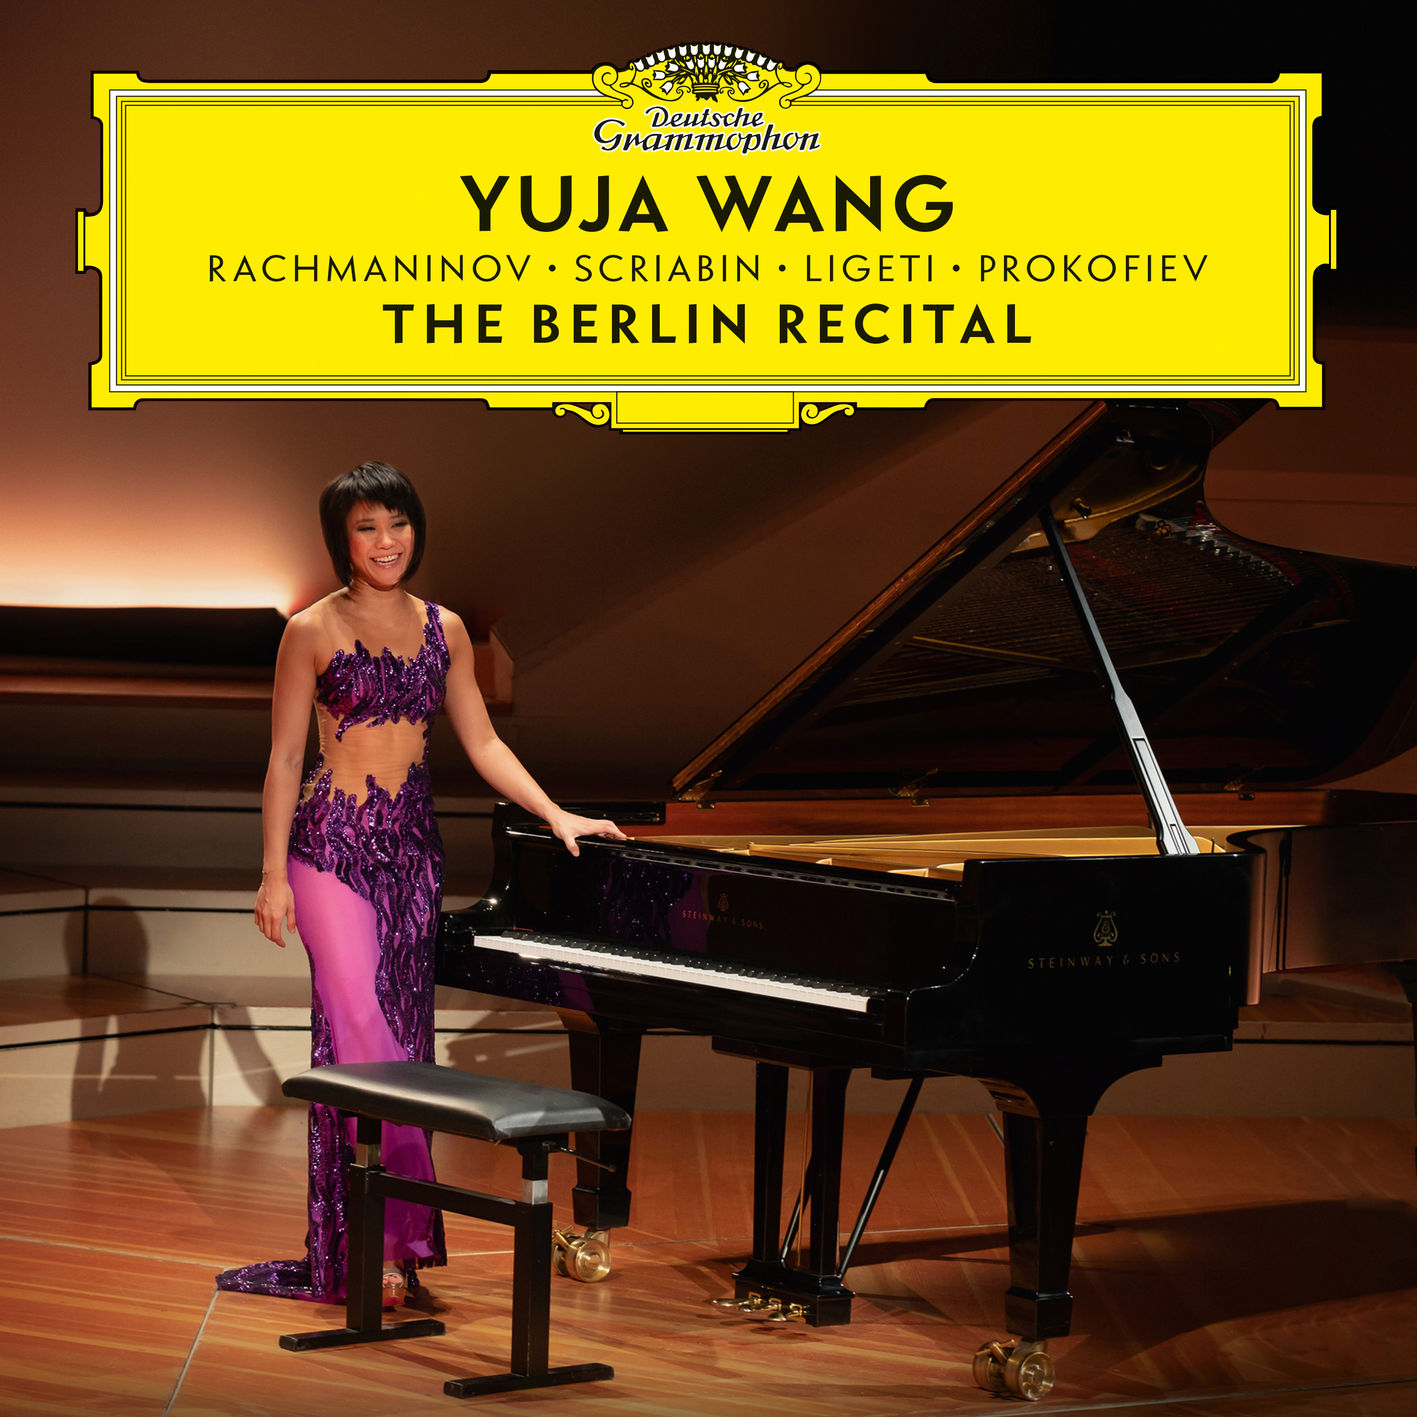 Yuja Wang - The Berlin Recital (2018) [FLAC 24bit/96kHz]